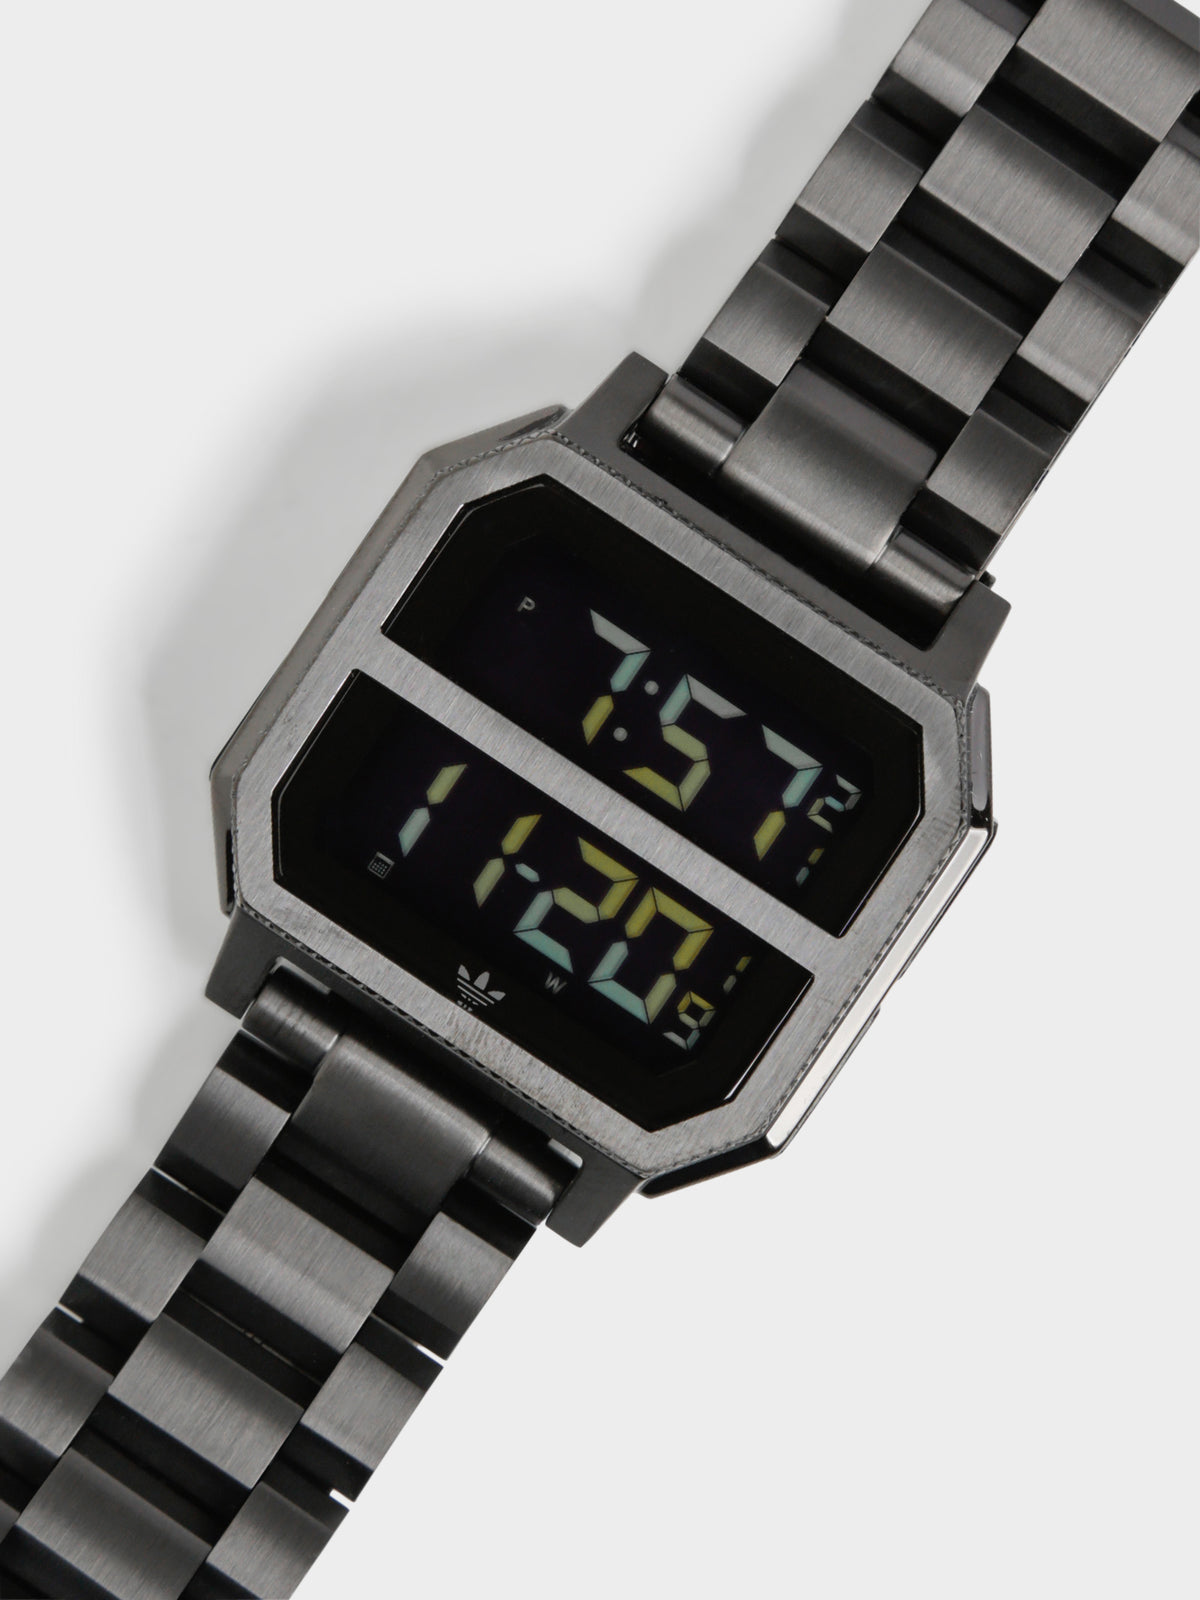 Archive_MR2 Steel Digital Watch in All Black